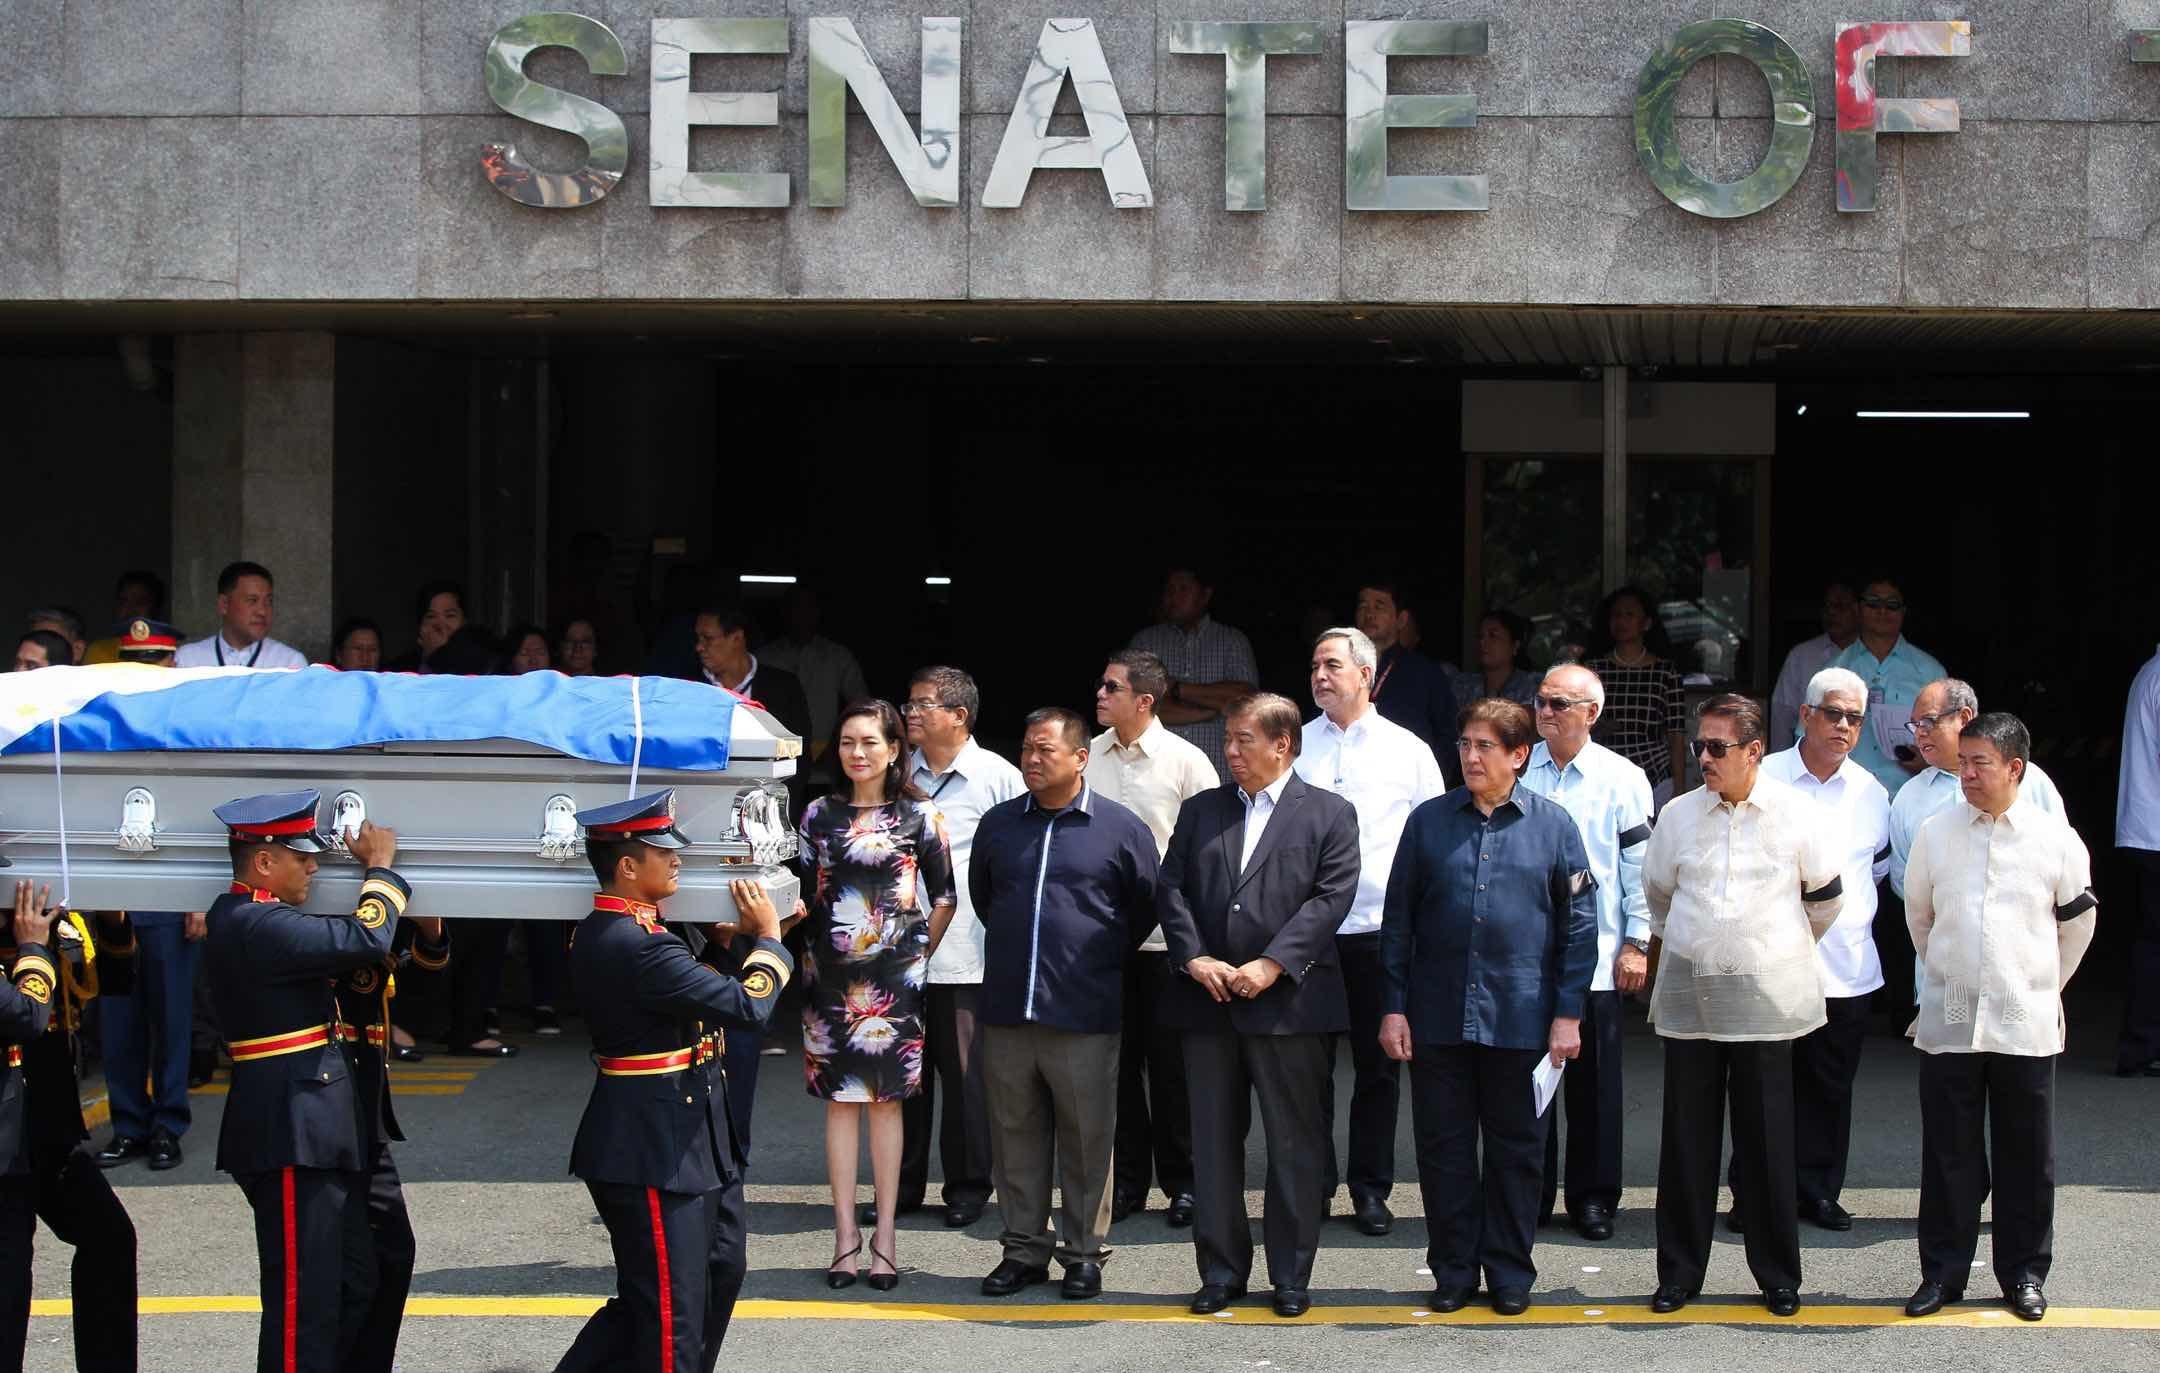 Senat mengenang keberanian mantan senator Eva Estrada-Kalaw